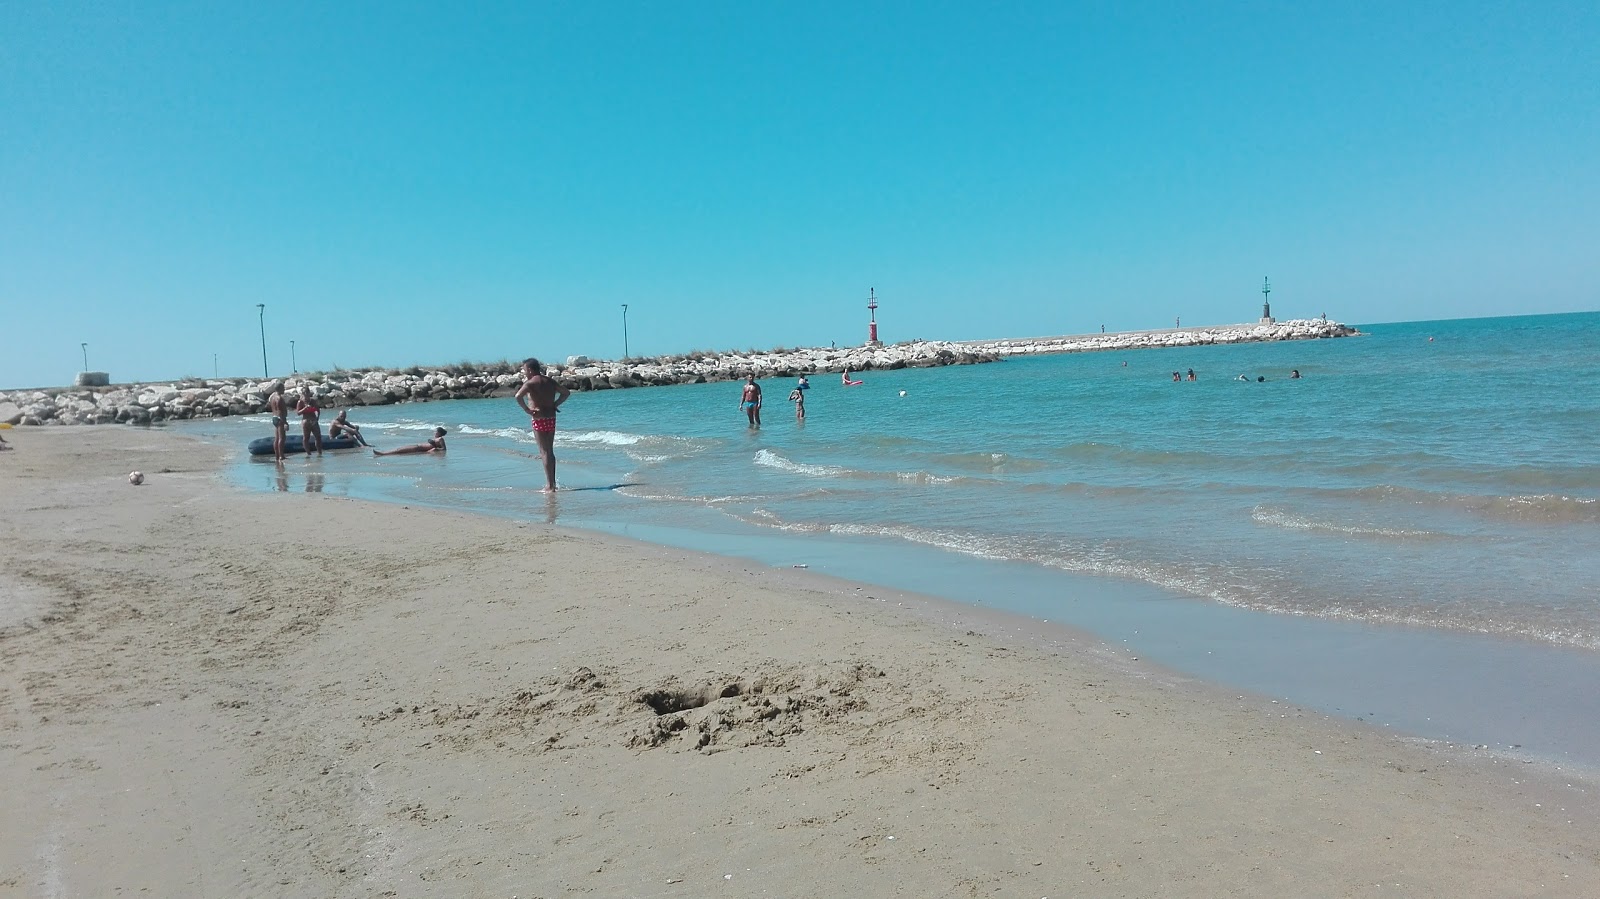 Foto av Spiaggia di Foce Varano med brunsand yta